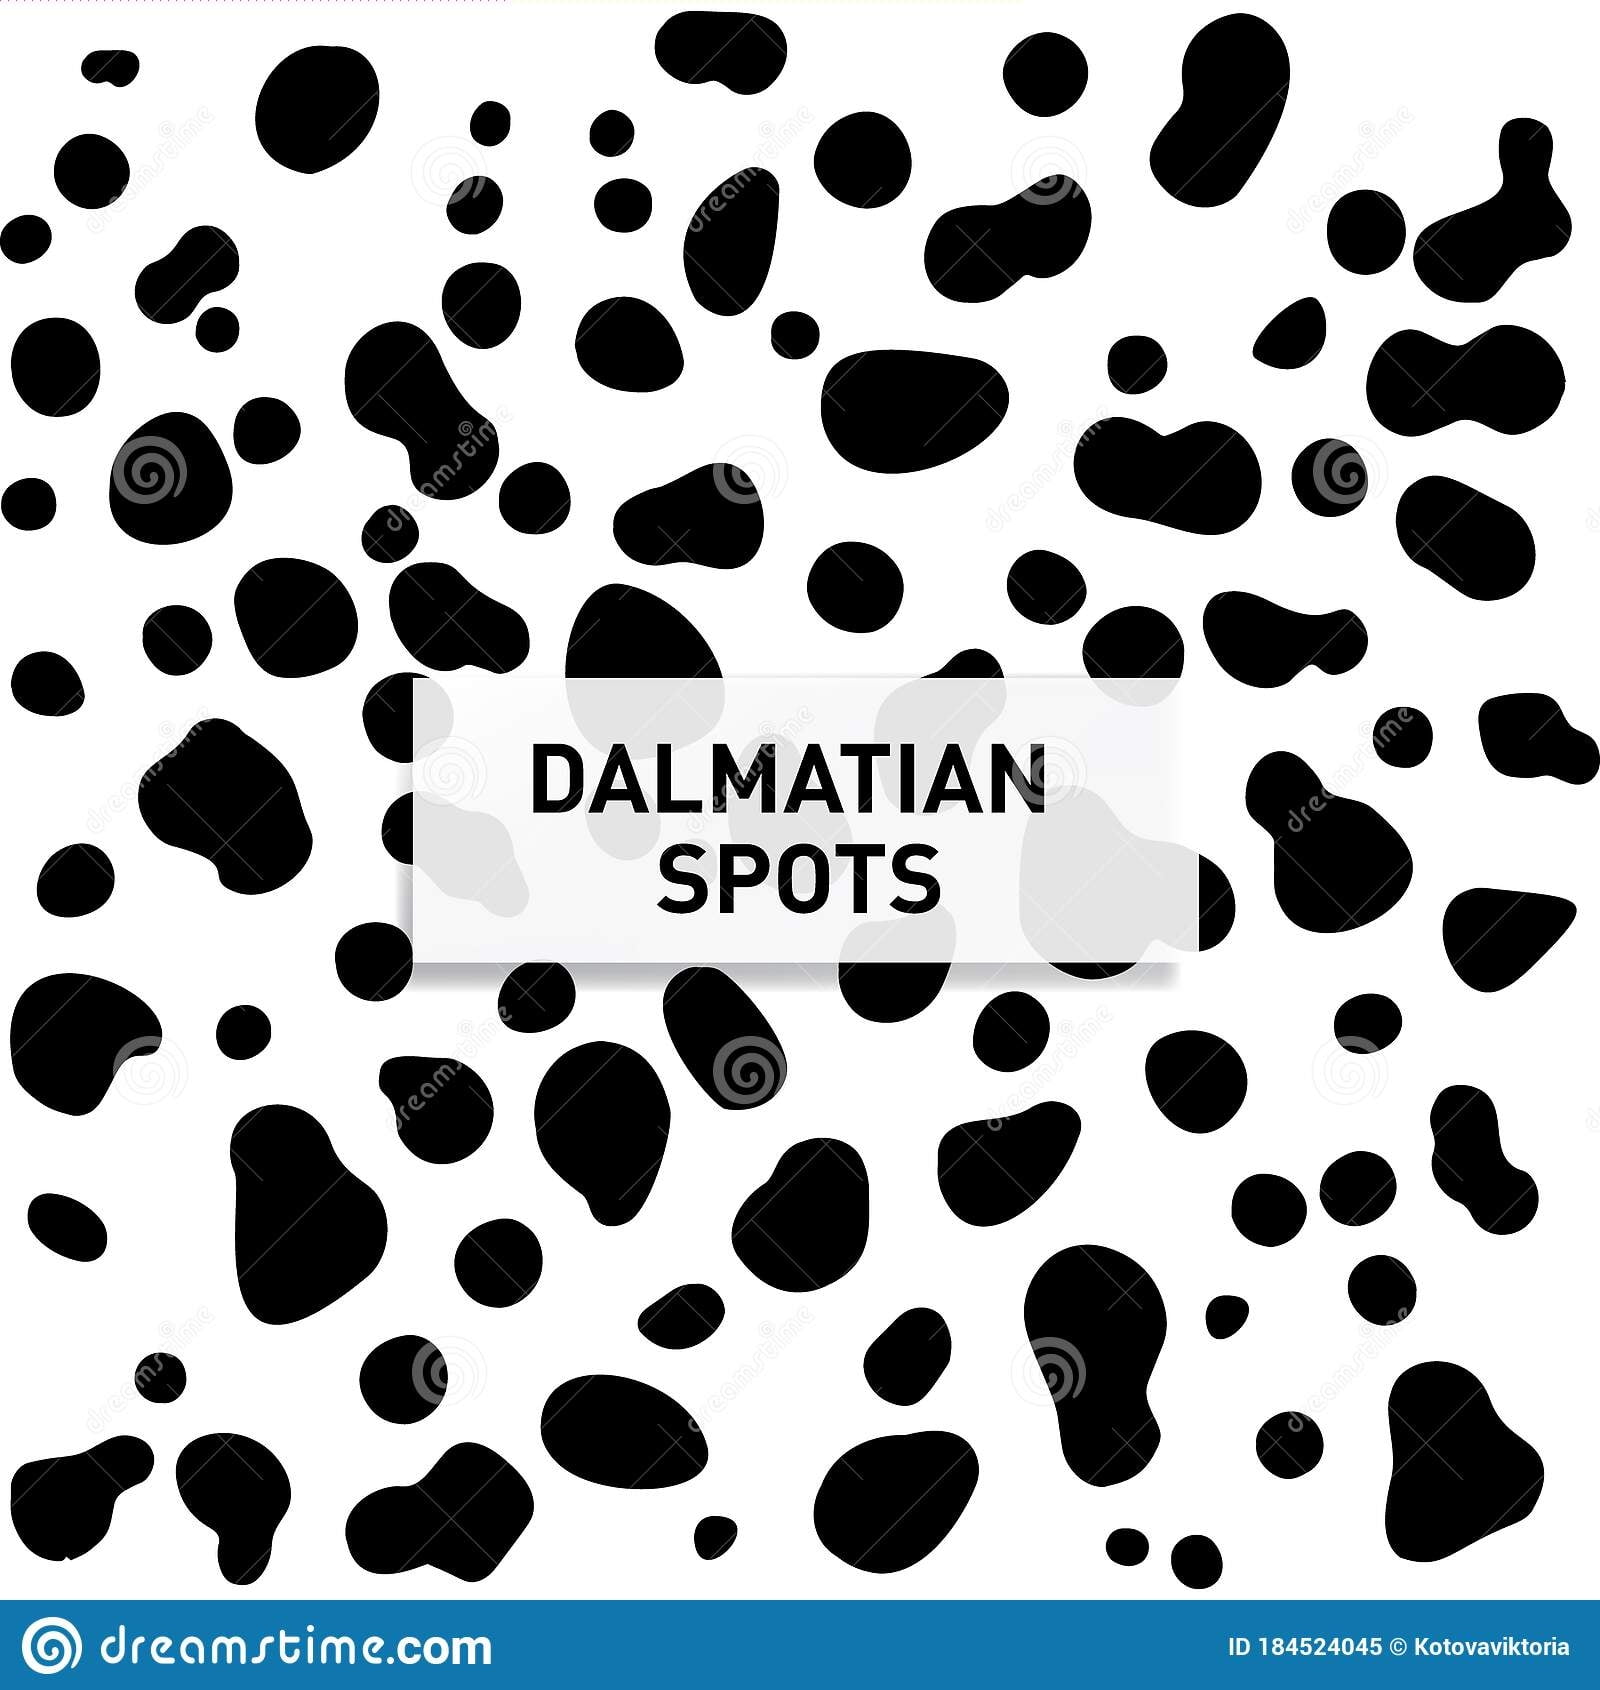 Dalmatian Spots Stock Illustrations 819 Dalmatian Spots Stock Illustrations Vectors Clipart Dreamstime